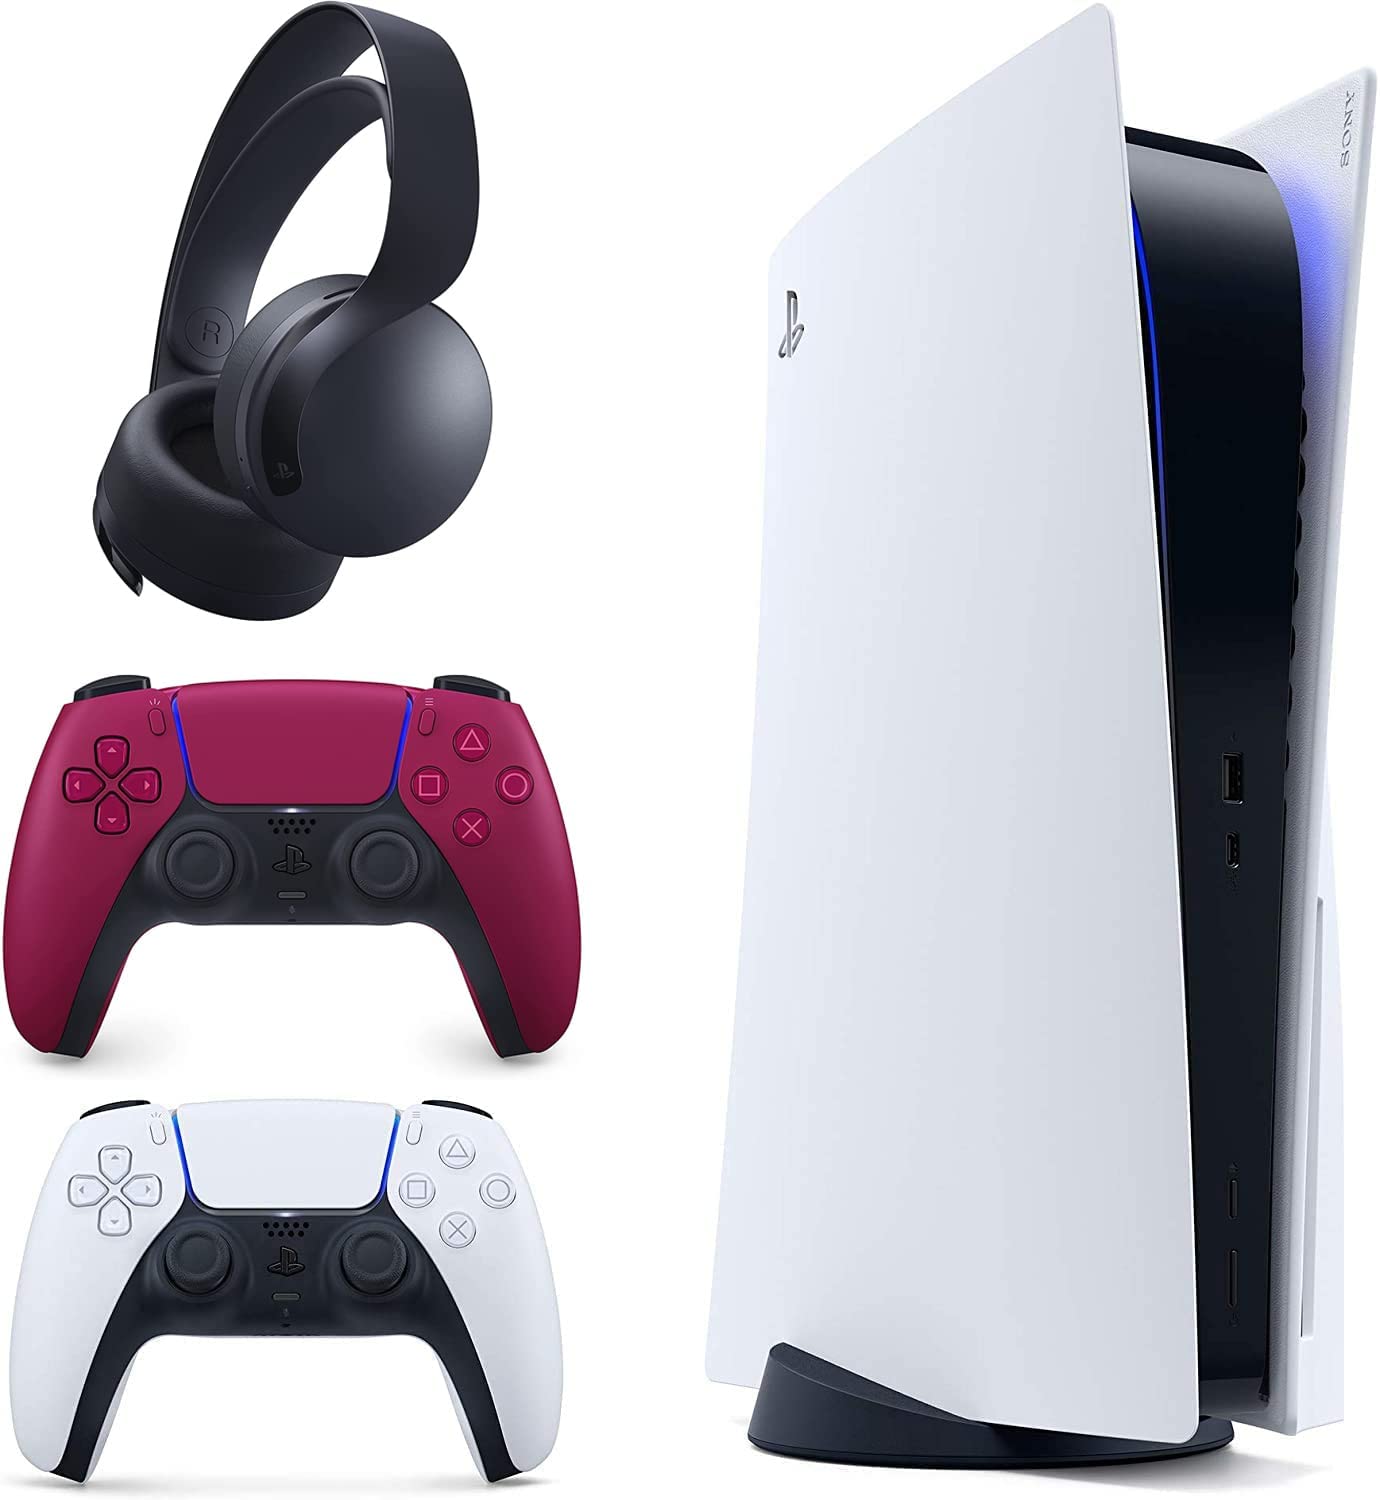 SONY PlayStation5 デジタルエディション 品 周辺機器セット 